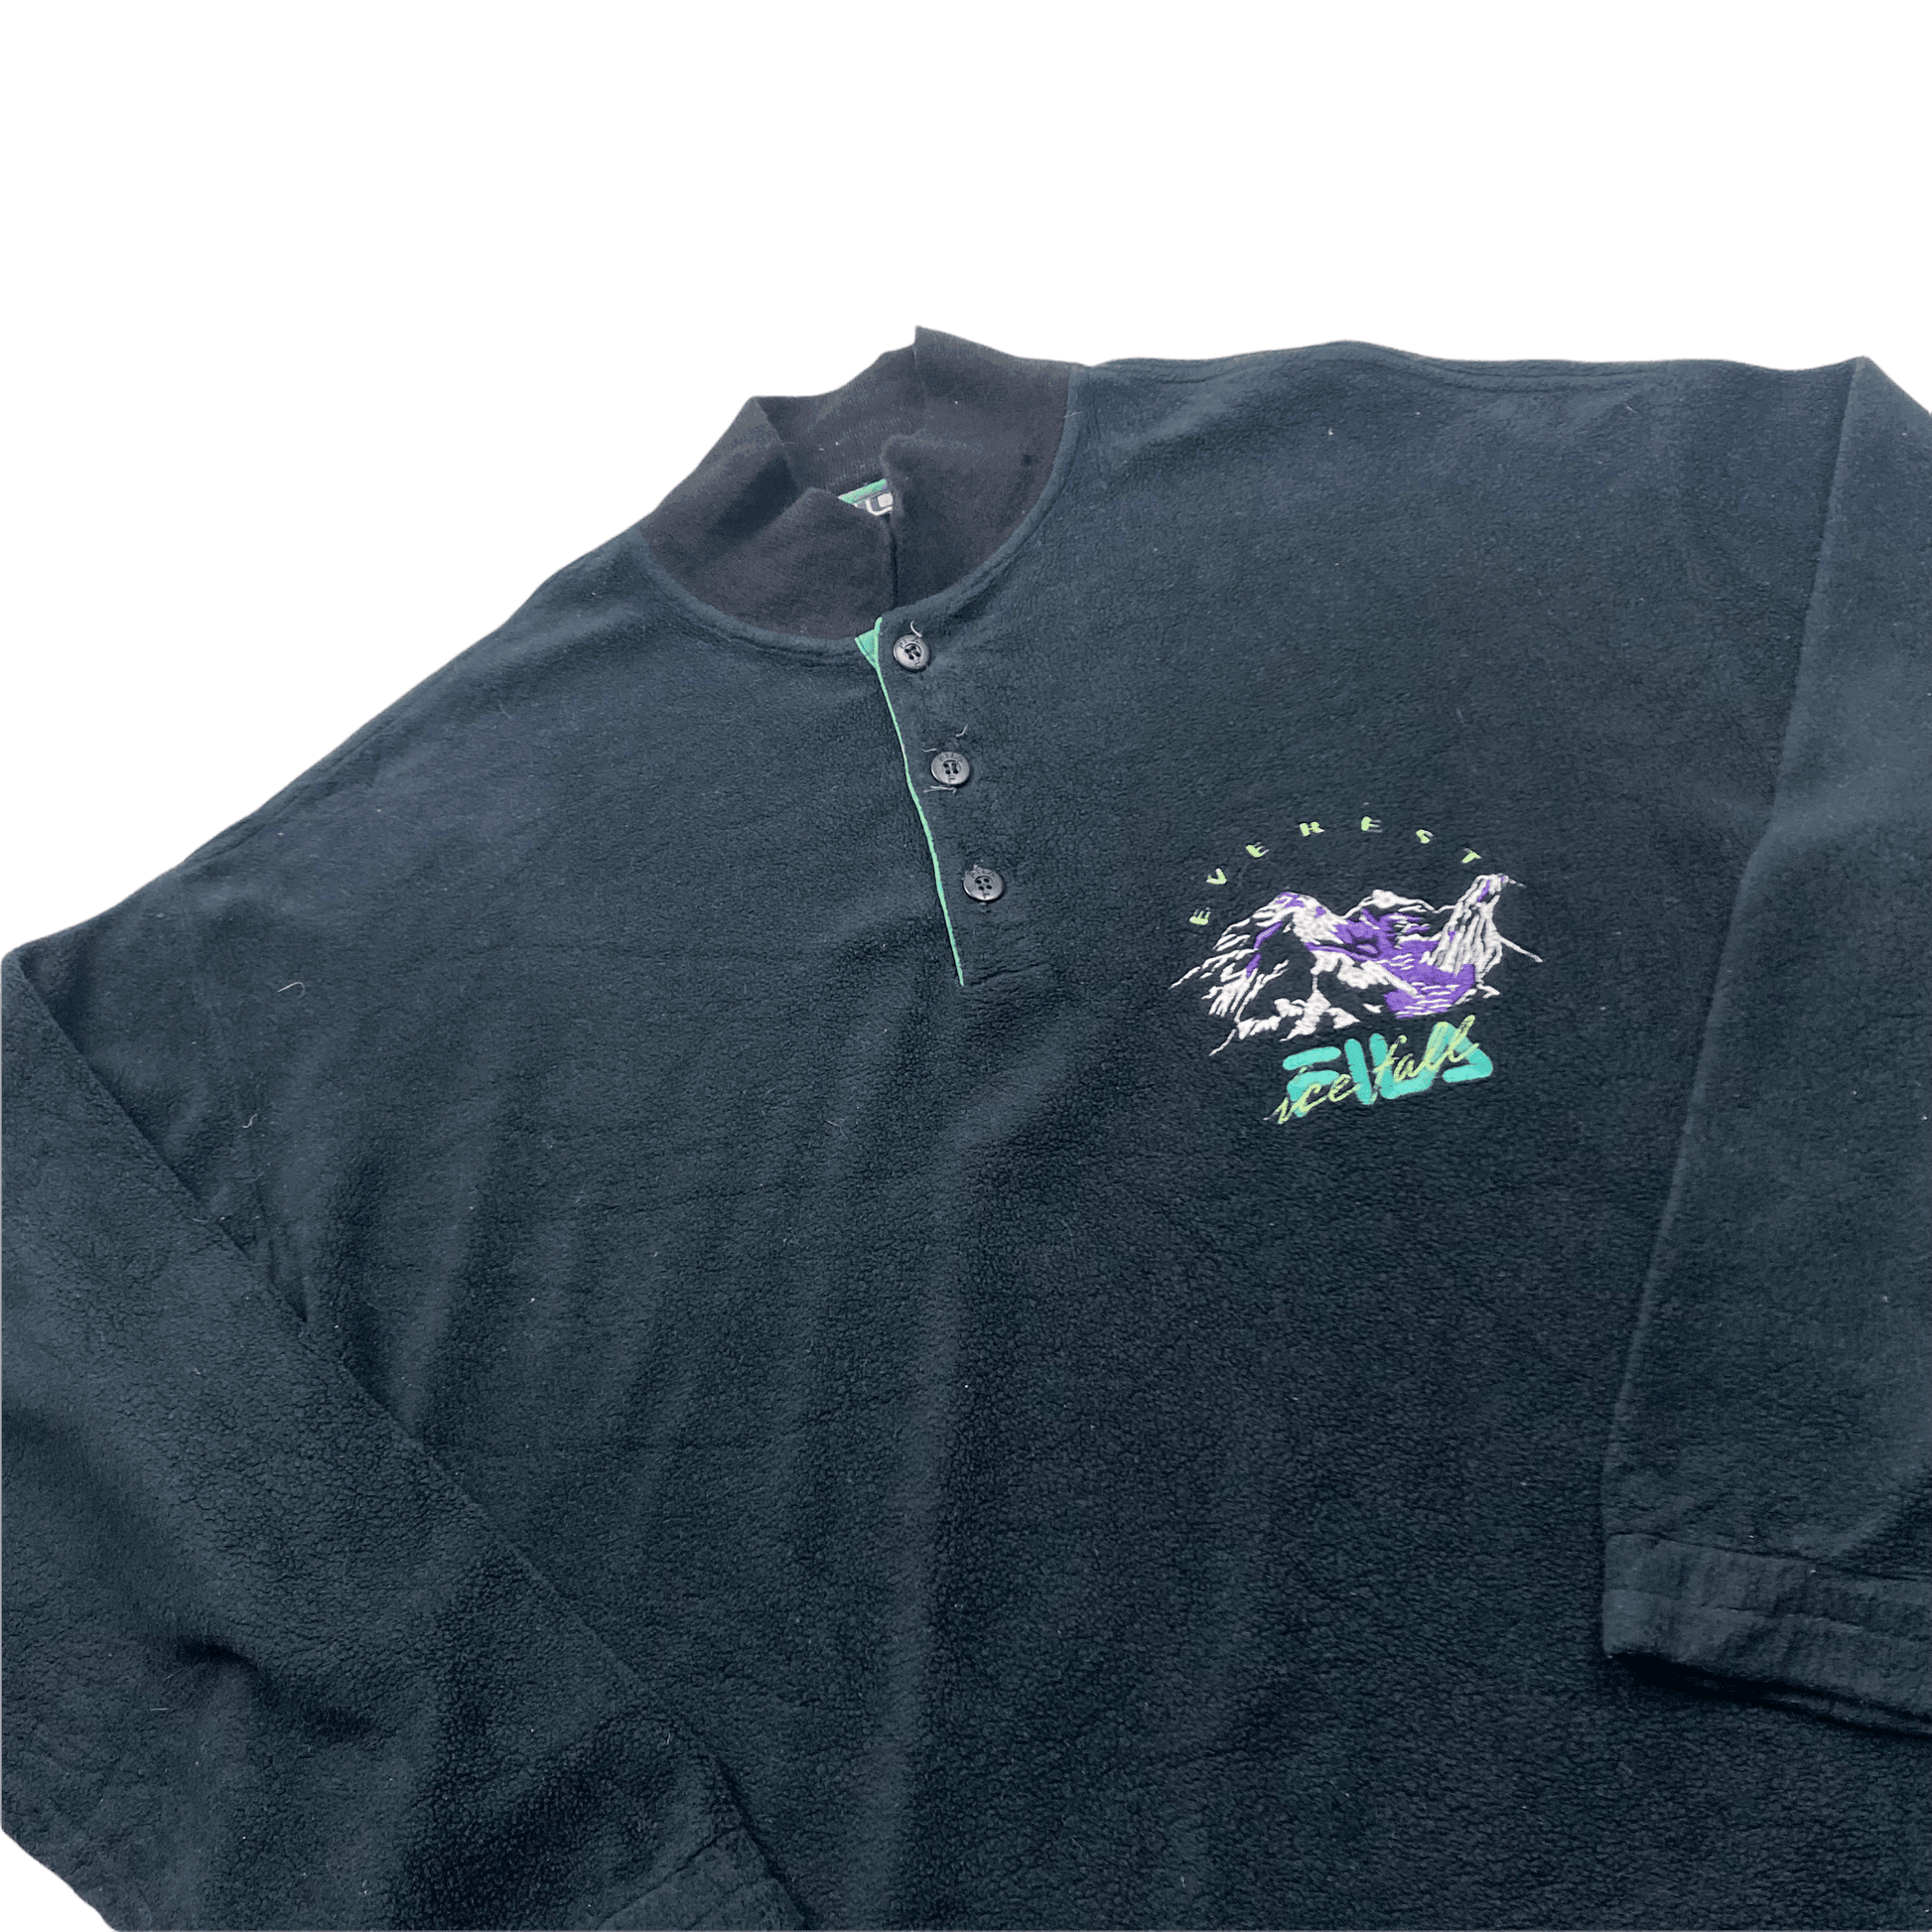 Vintage 90s Black Fila Ice Fall Spell-Out Fleece Sweatshirt - Large - The Streetwear Studio